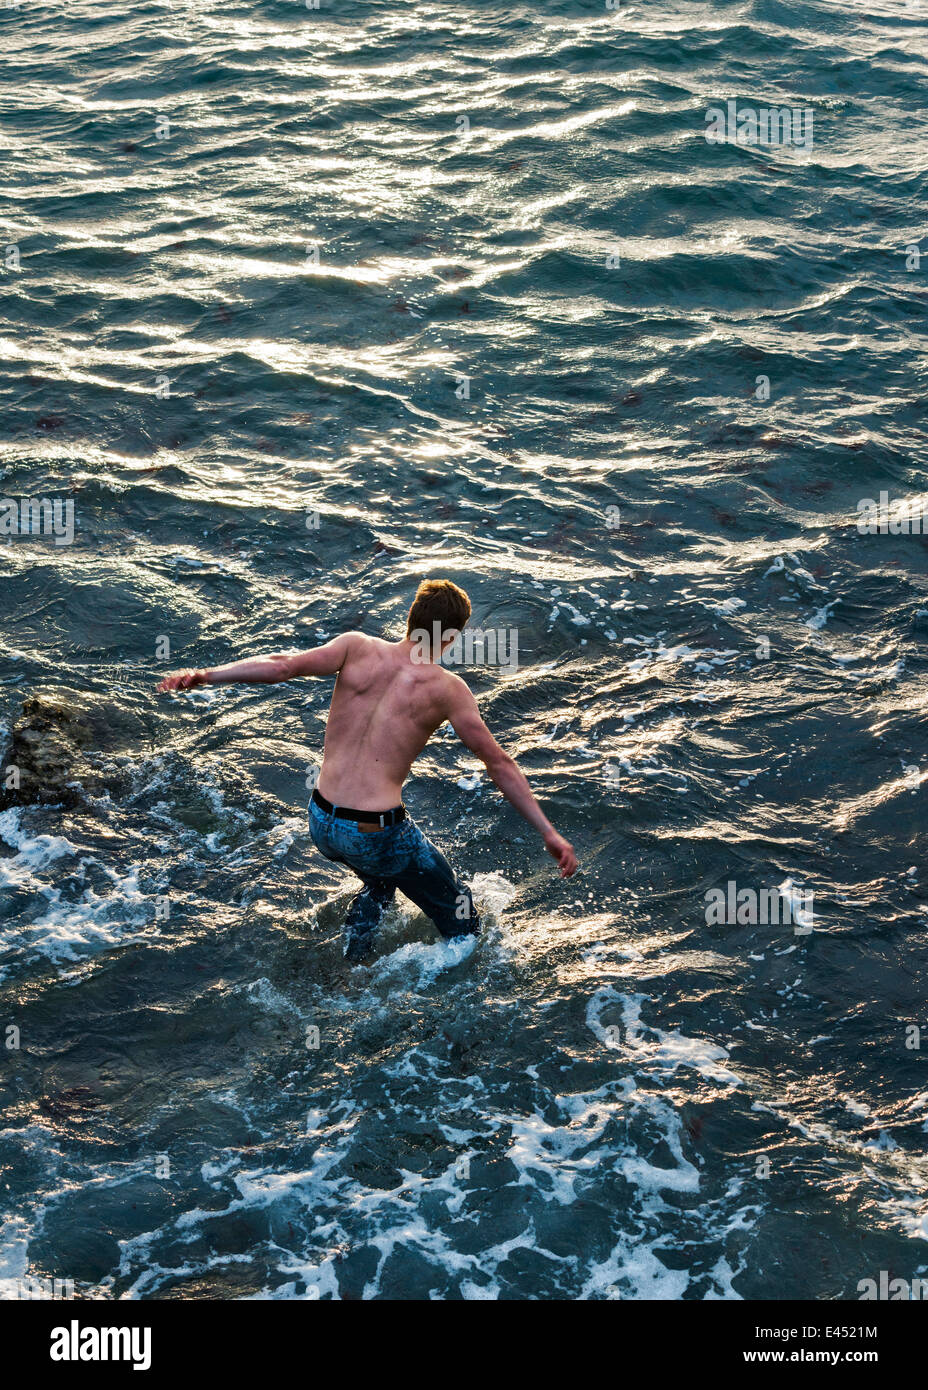 L'homme nage dans les eaux agitées. Banque D'Images